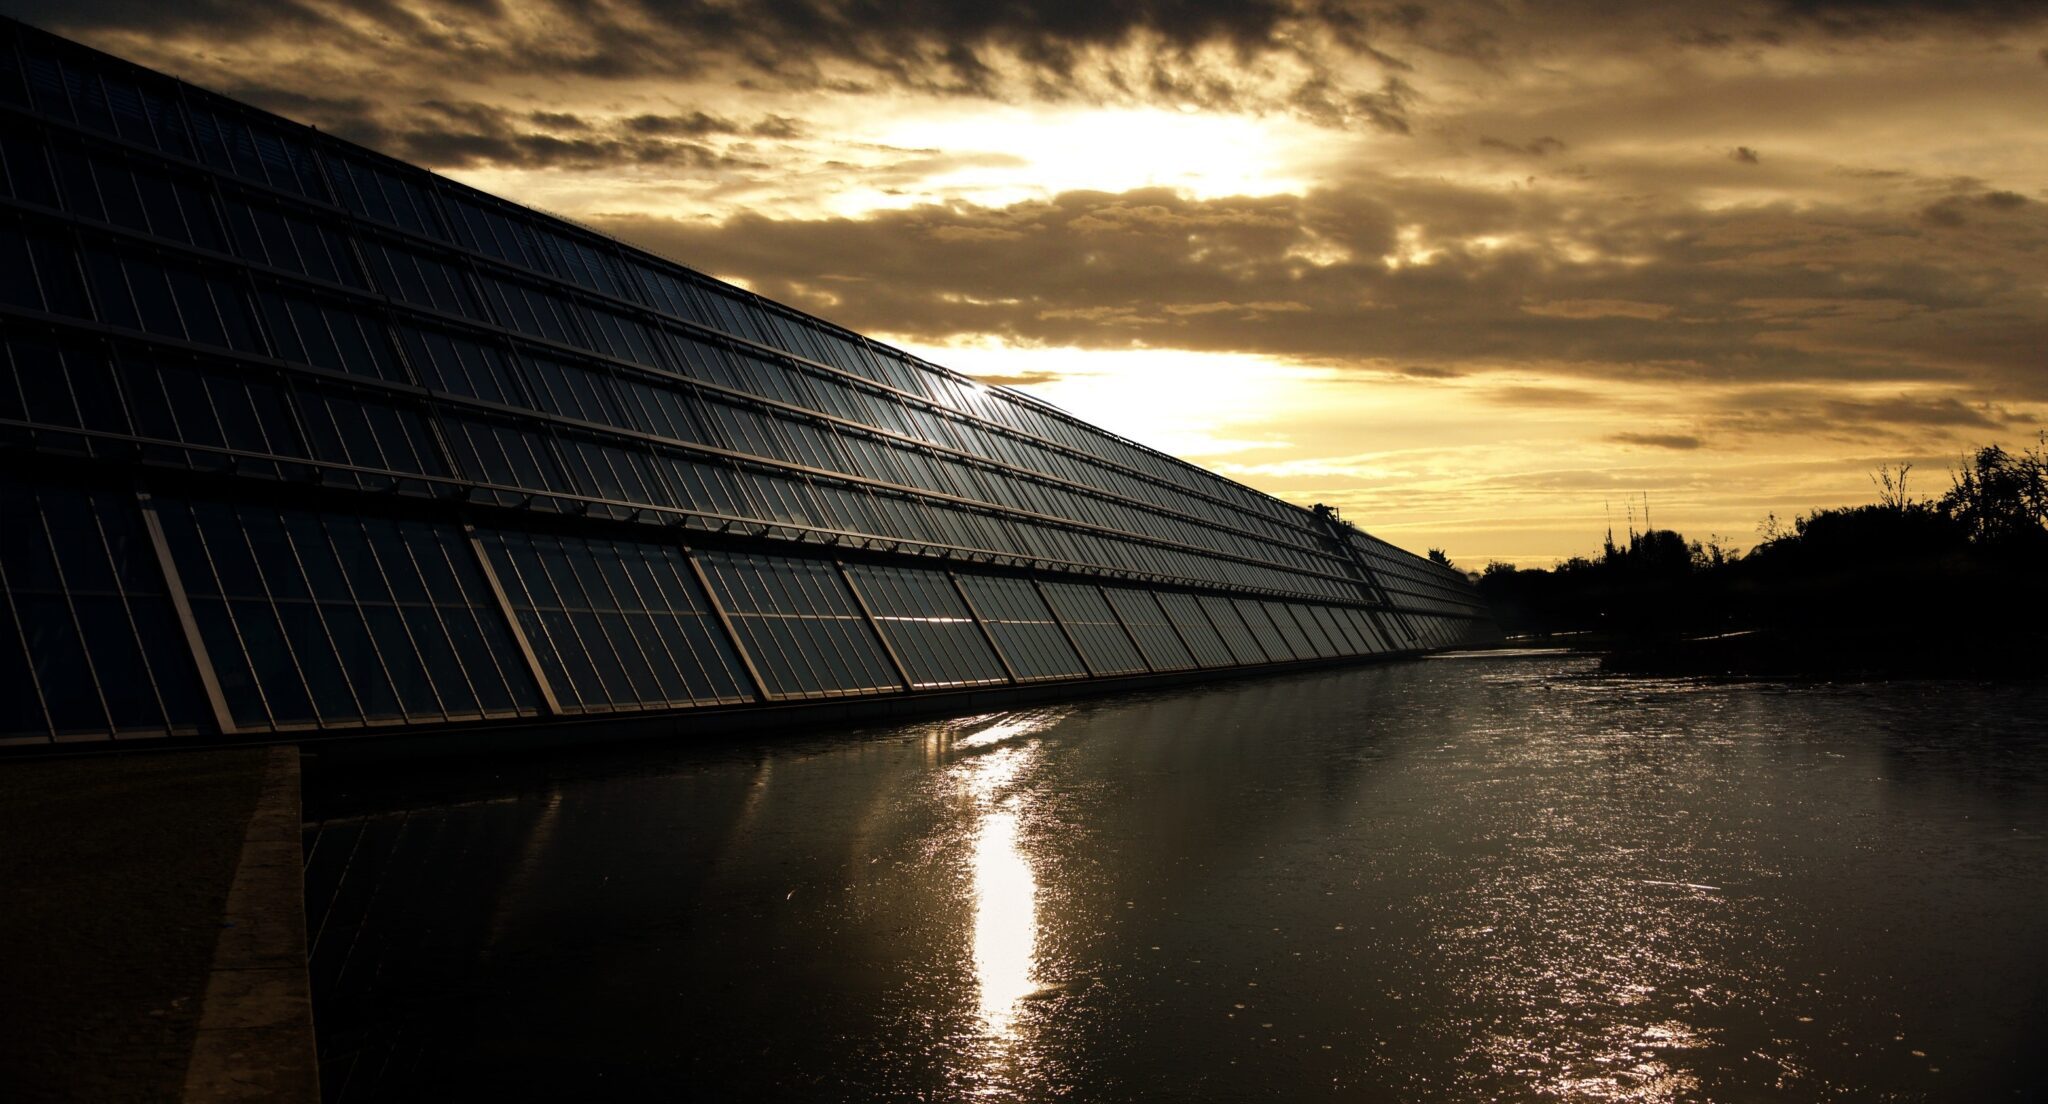 Toezichthouder wil snel einde aan salderingsregeling zonnepanelen